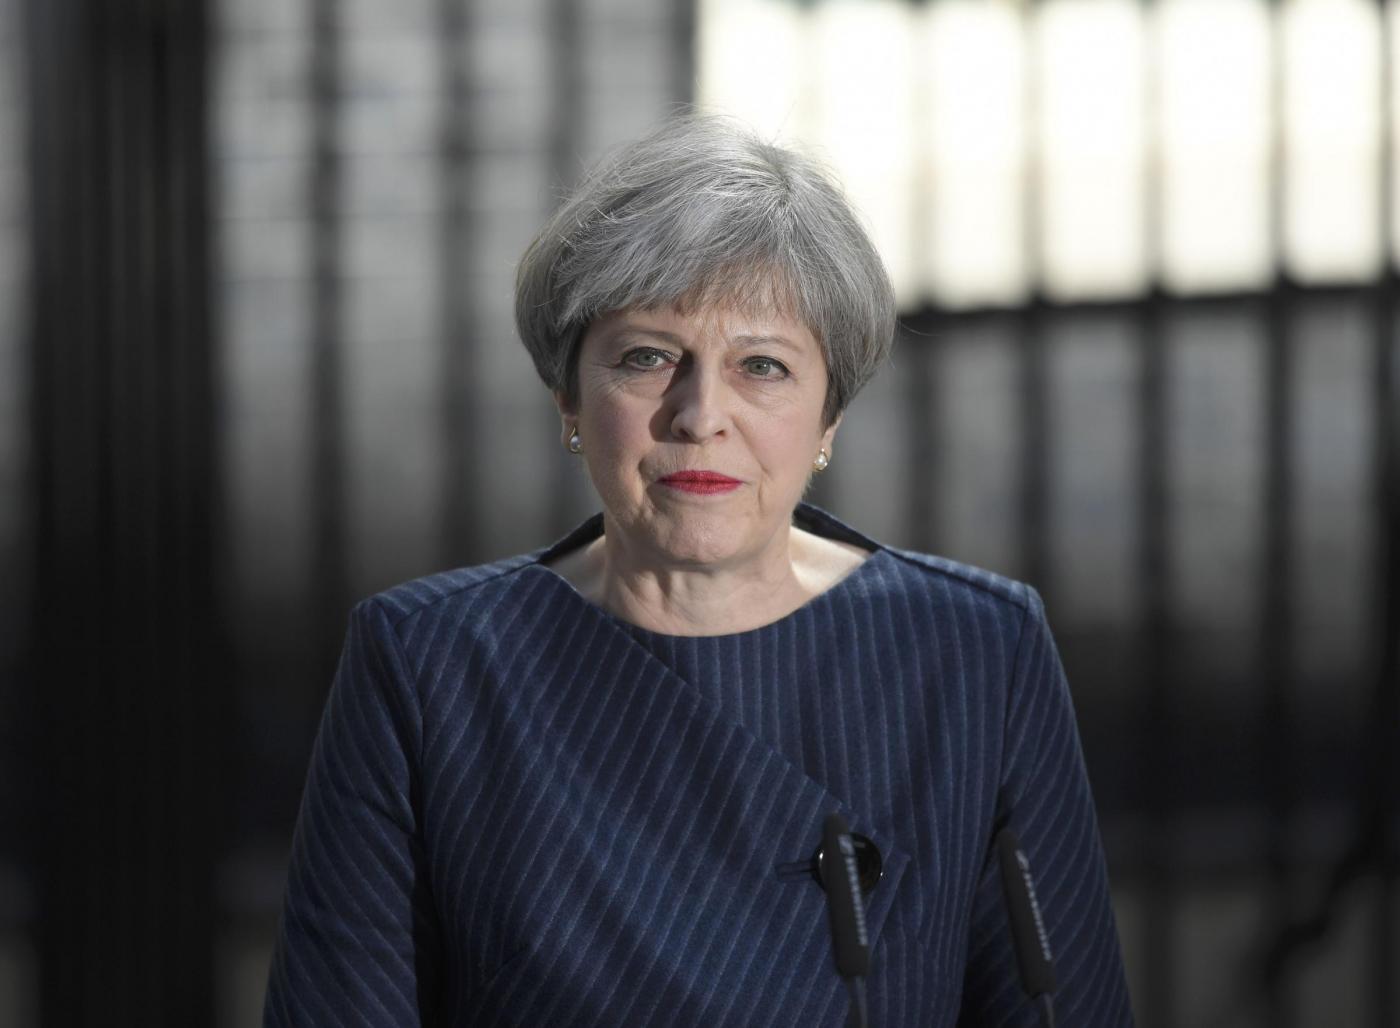 Londra, il premier Theresa May annuncia elezioni anticipate all'8 giugno